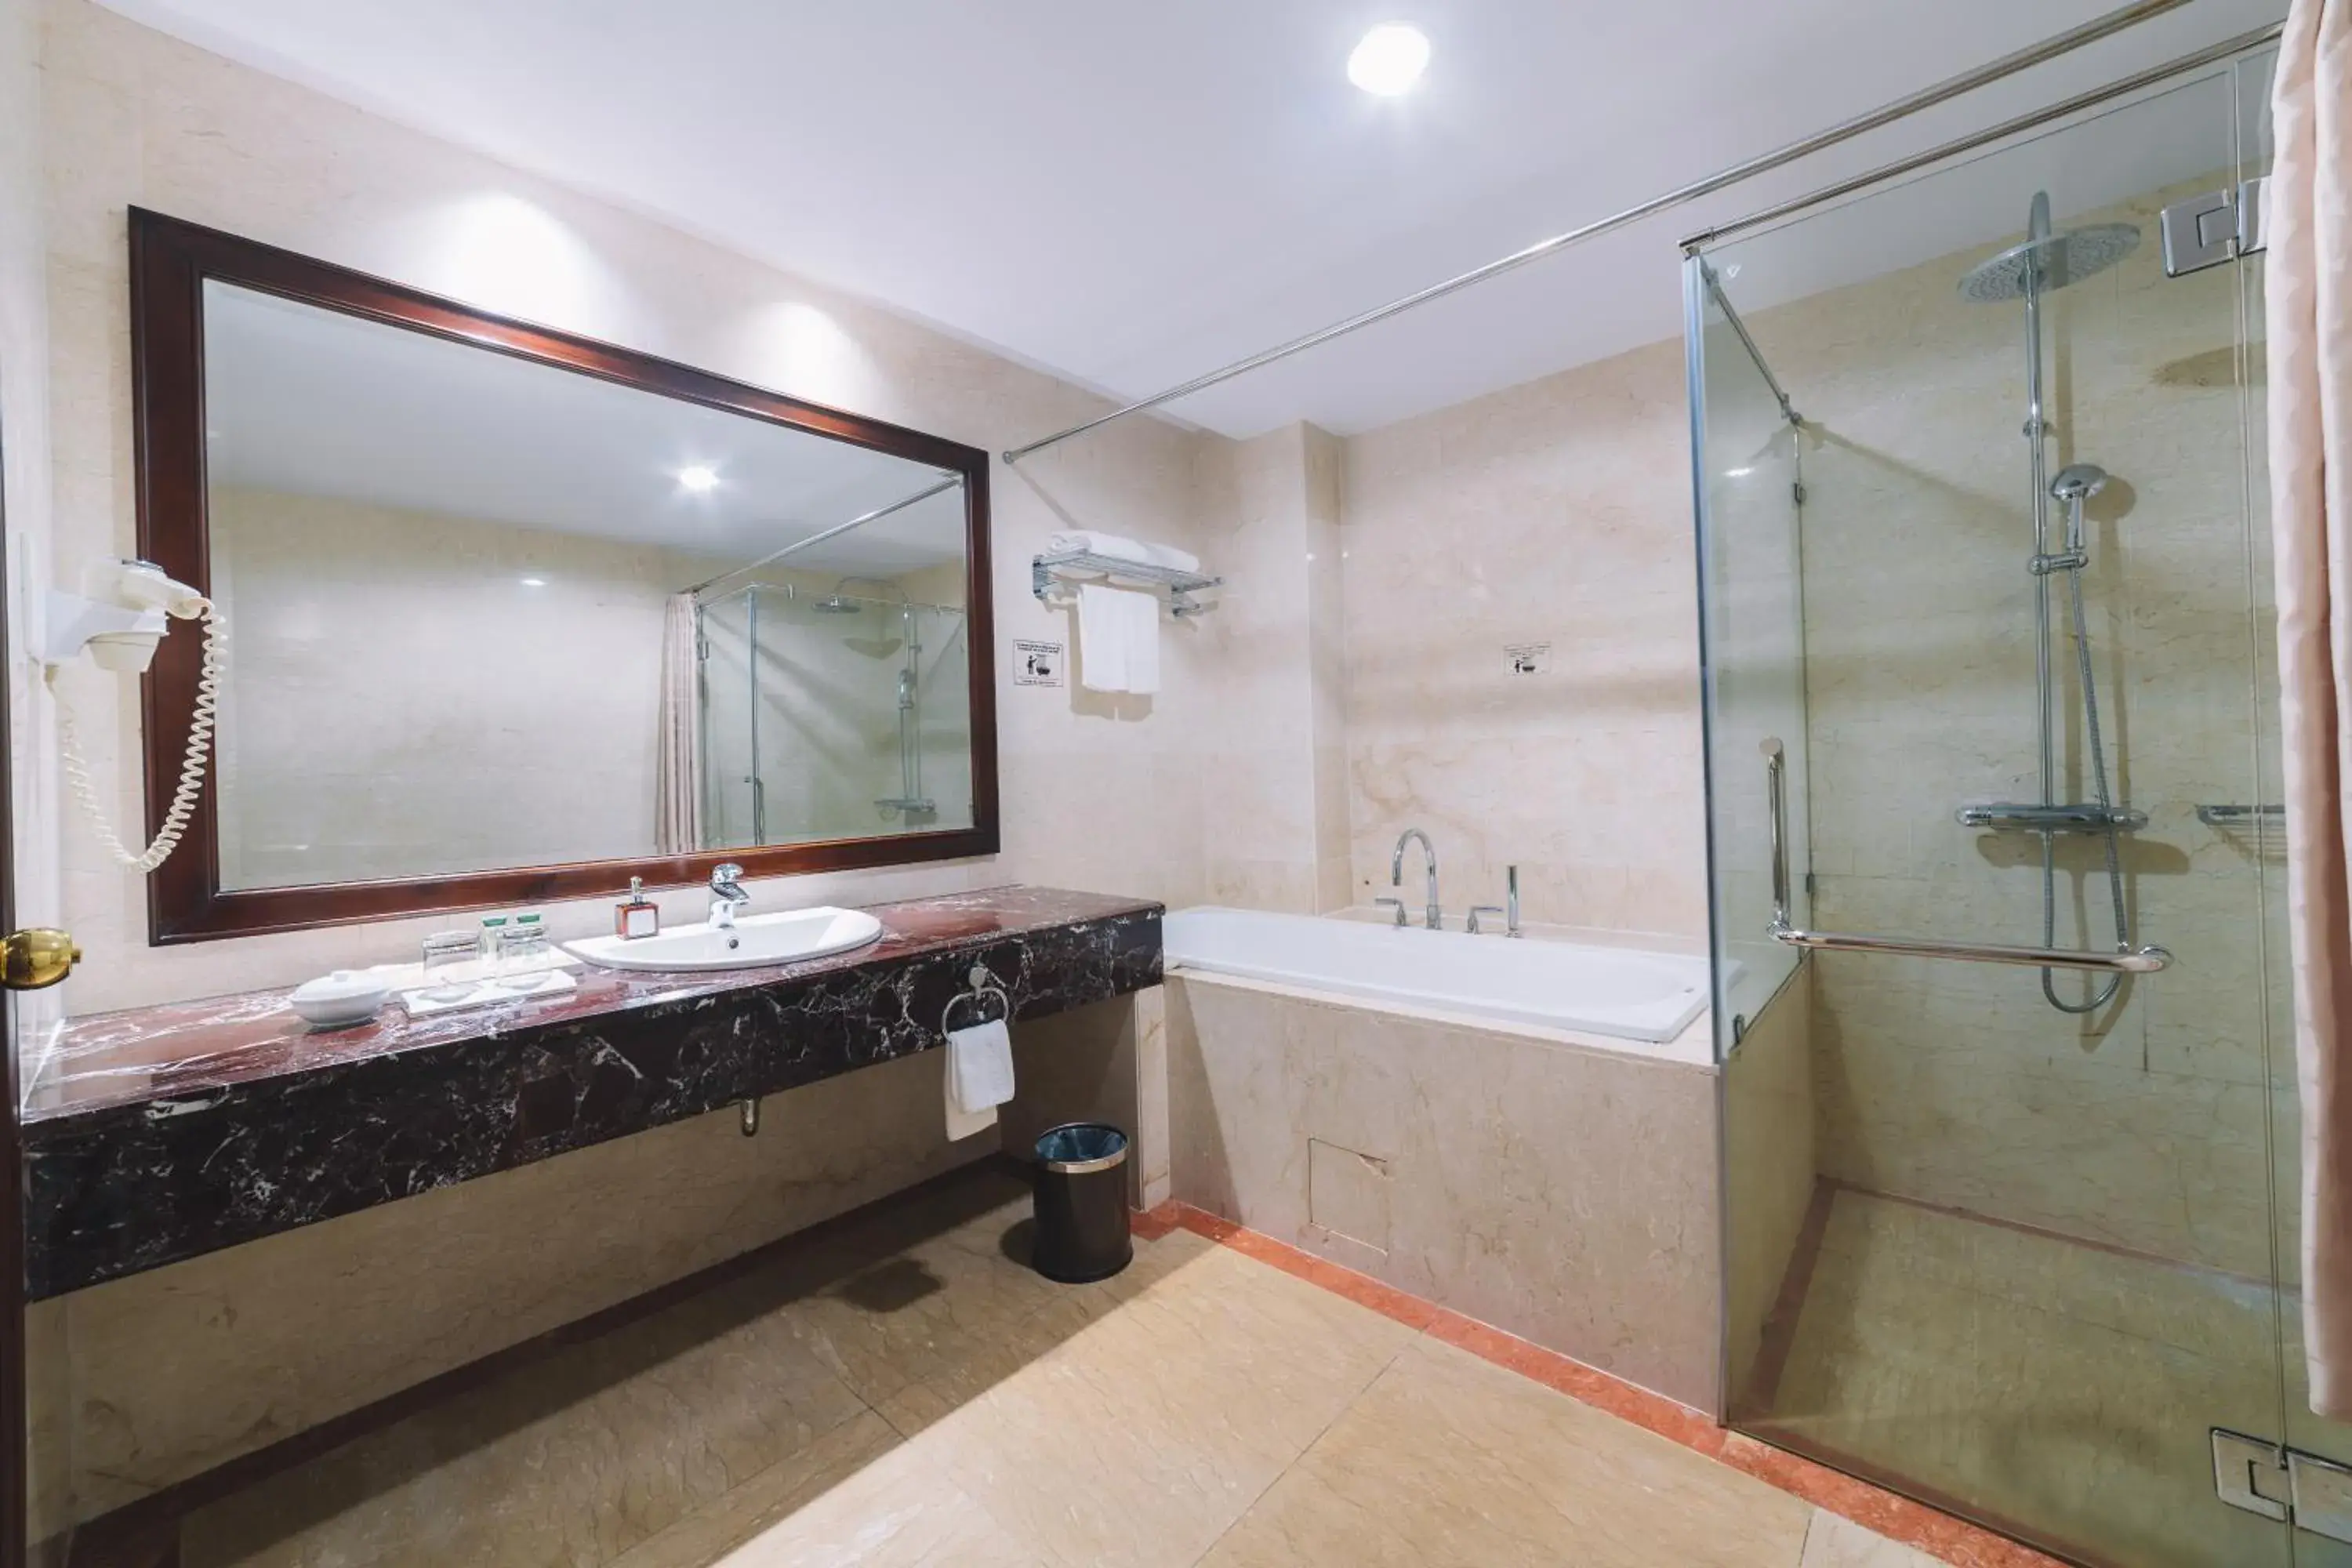 Shower, Bathroom in Saigon Dalat Hotel